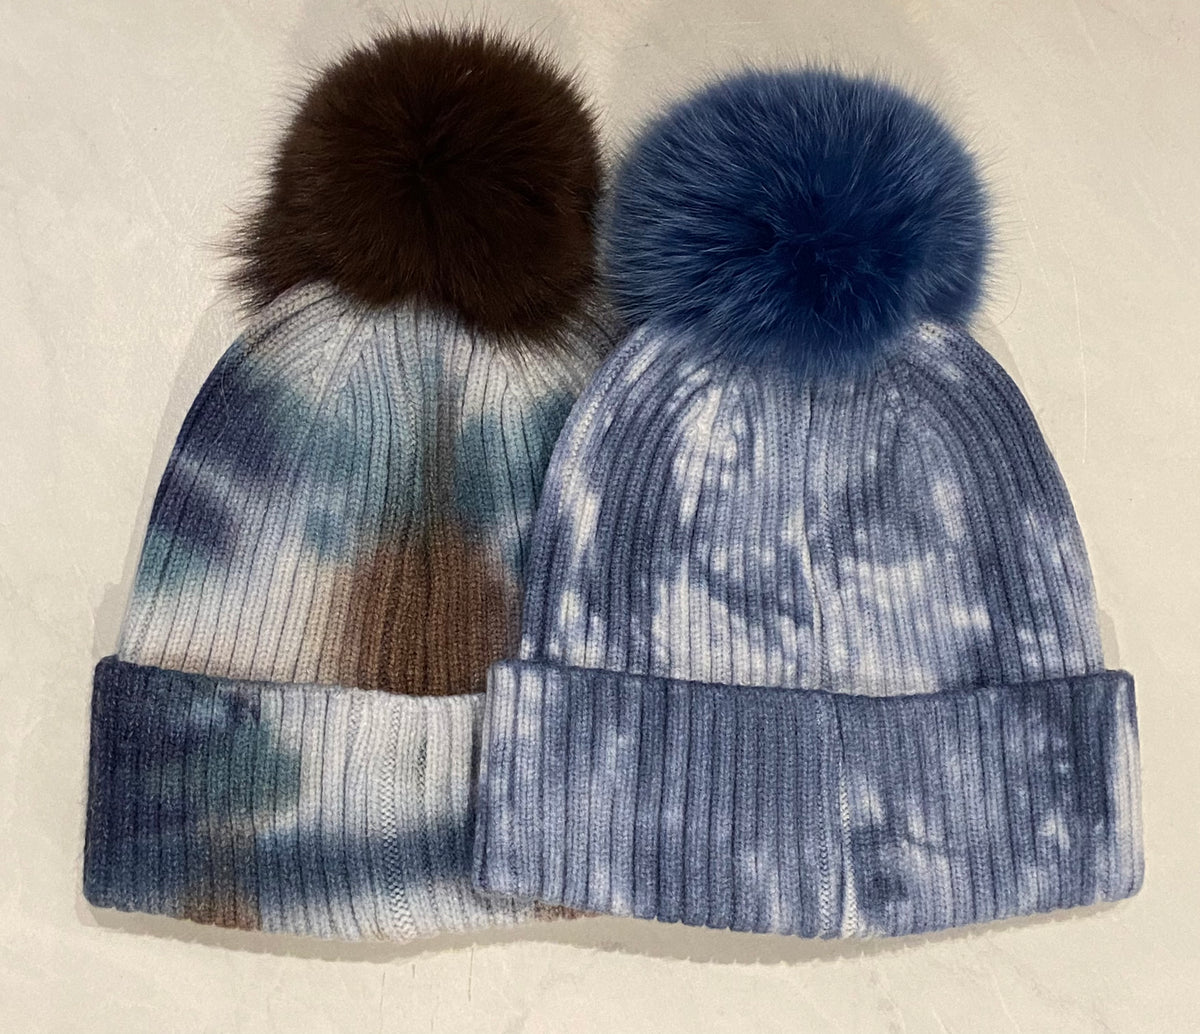 Mitchie's Knitted Tie Dye Hat – The Halifax Bra Store